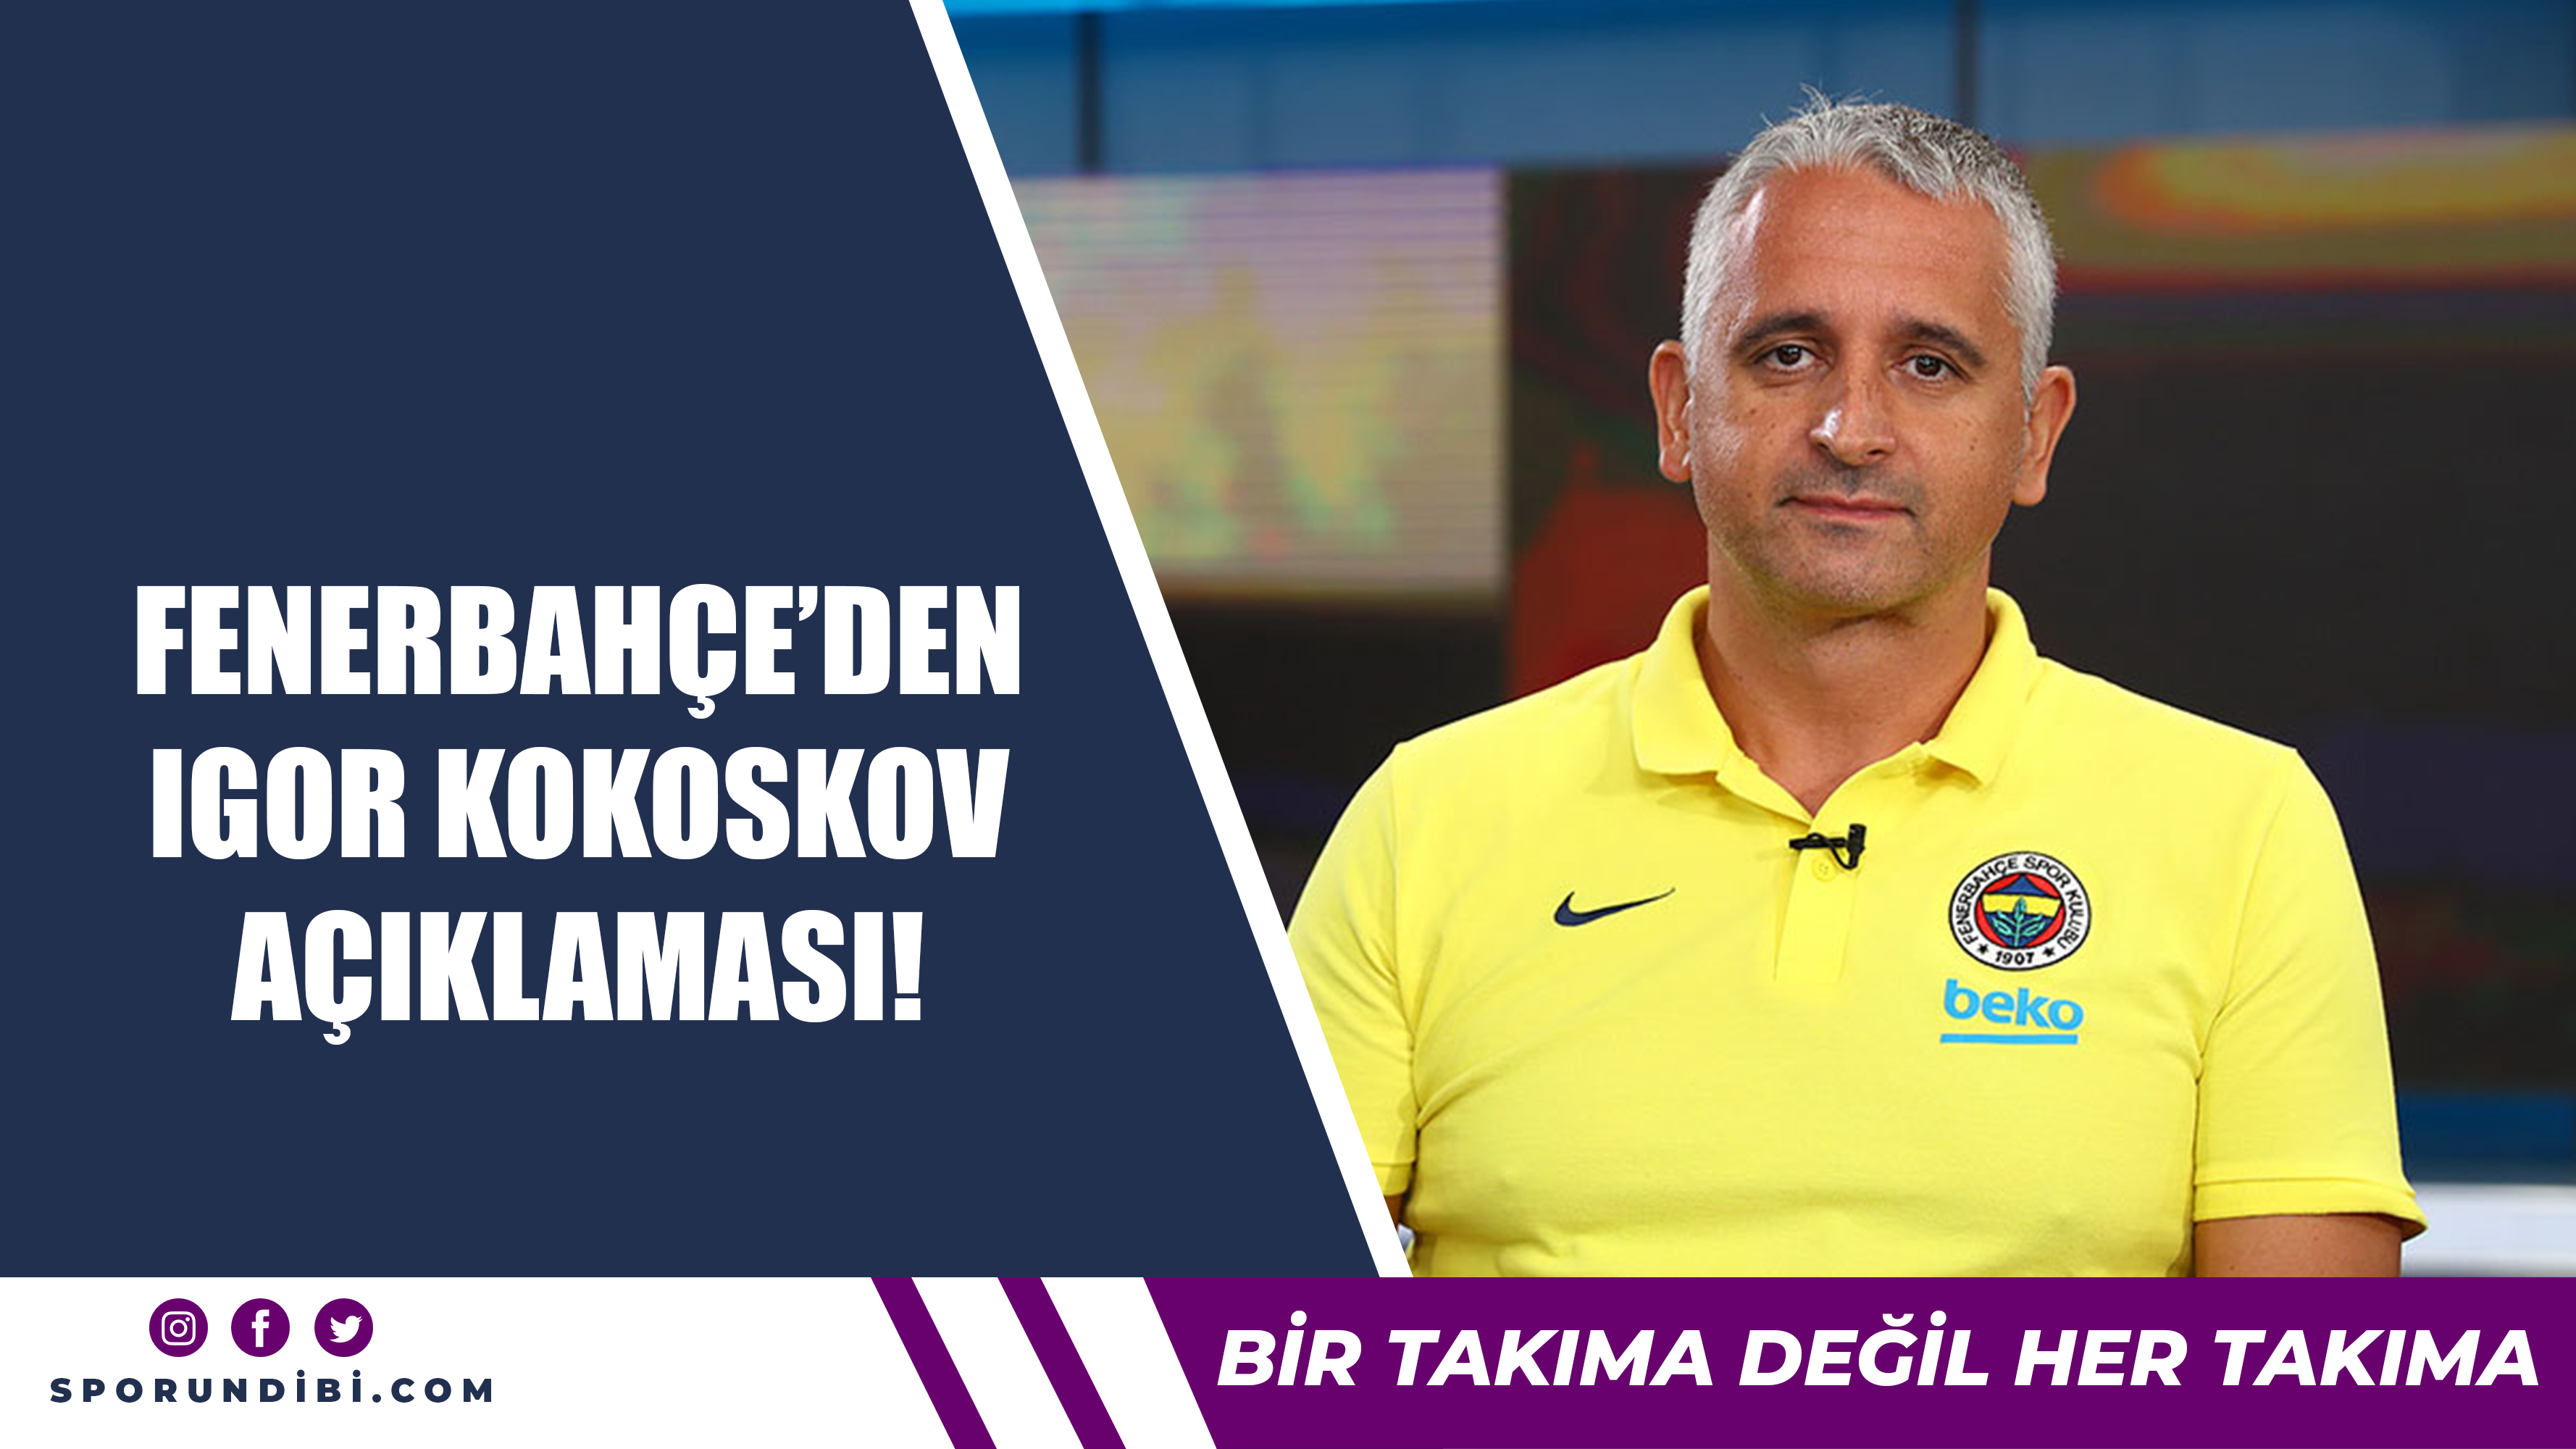 Fenerbahçe'den Igor Kokoskov açıklaması!